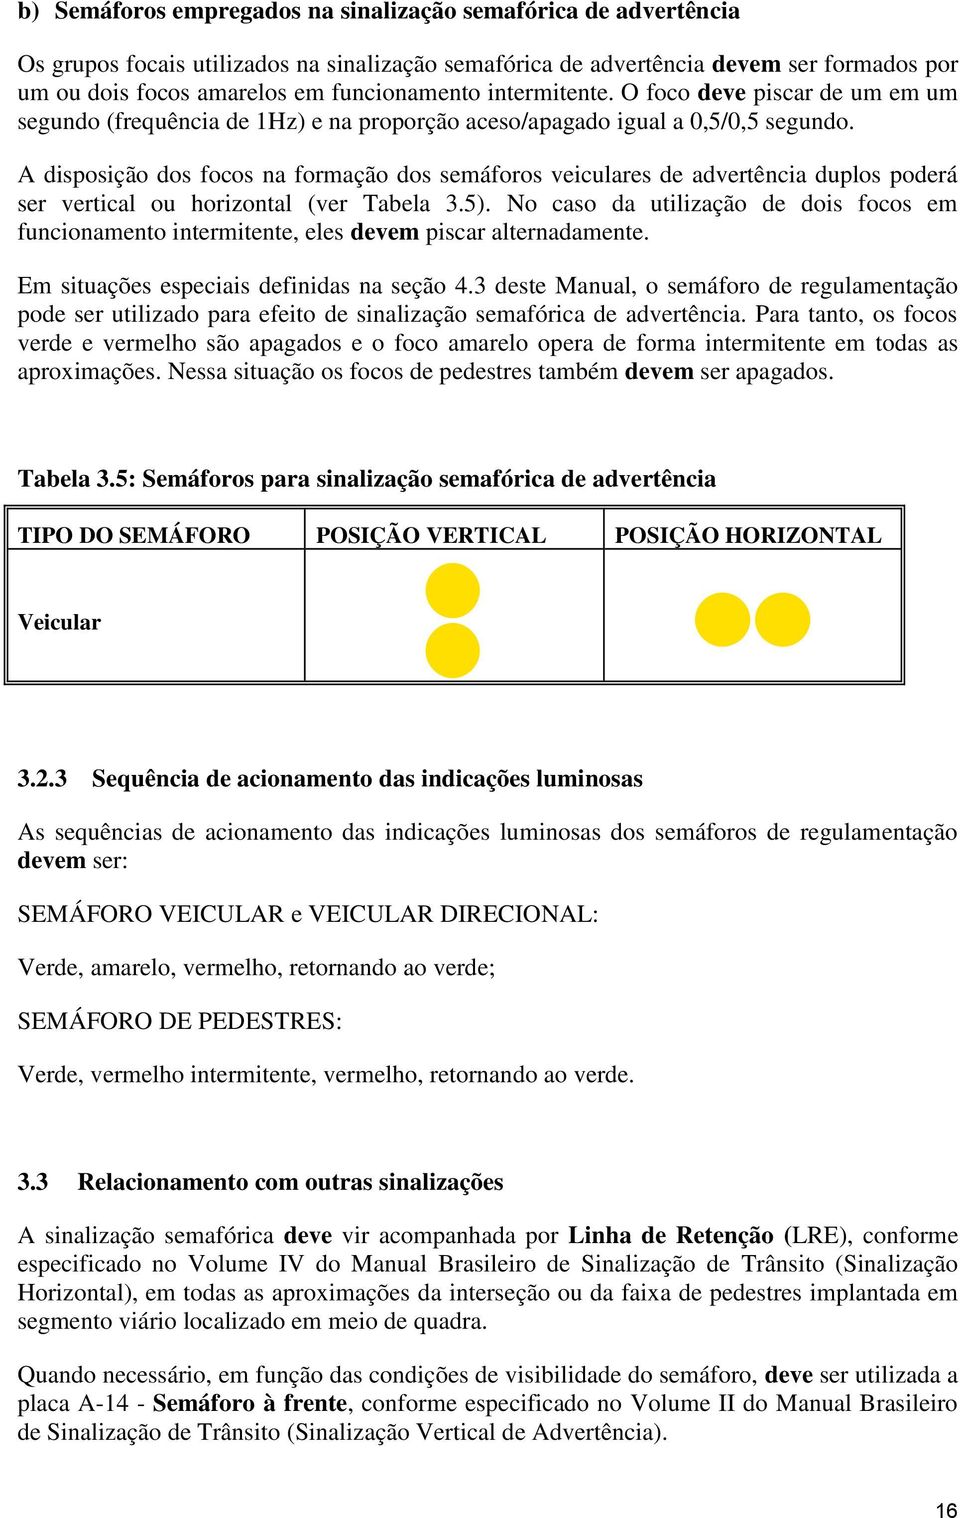 A disposição dos focos na formação dos semáforos veiculares de advertência duplos poderá ser vertical ou horizontal (ver Tabela 3.5).